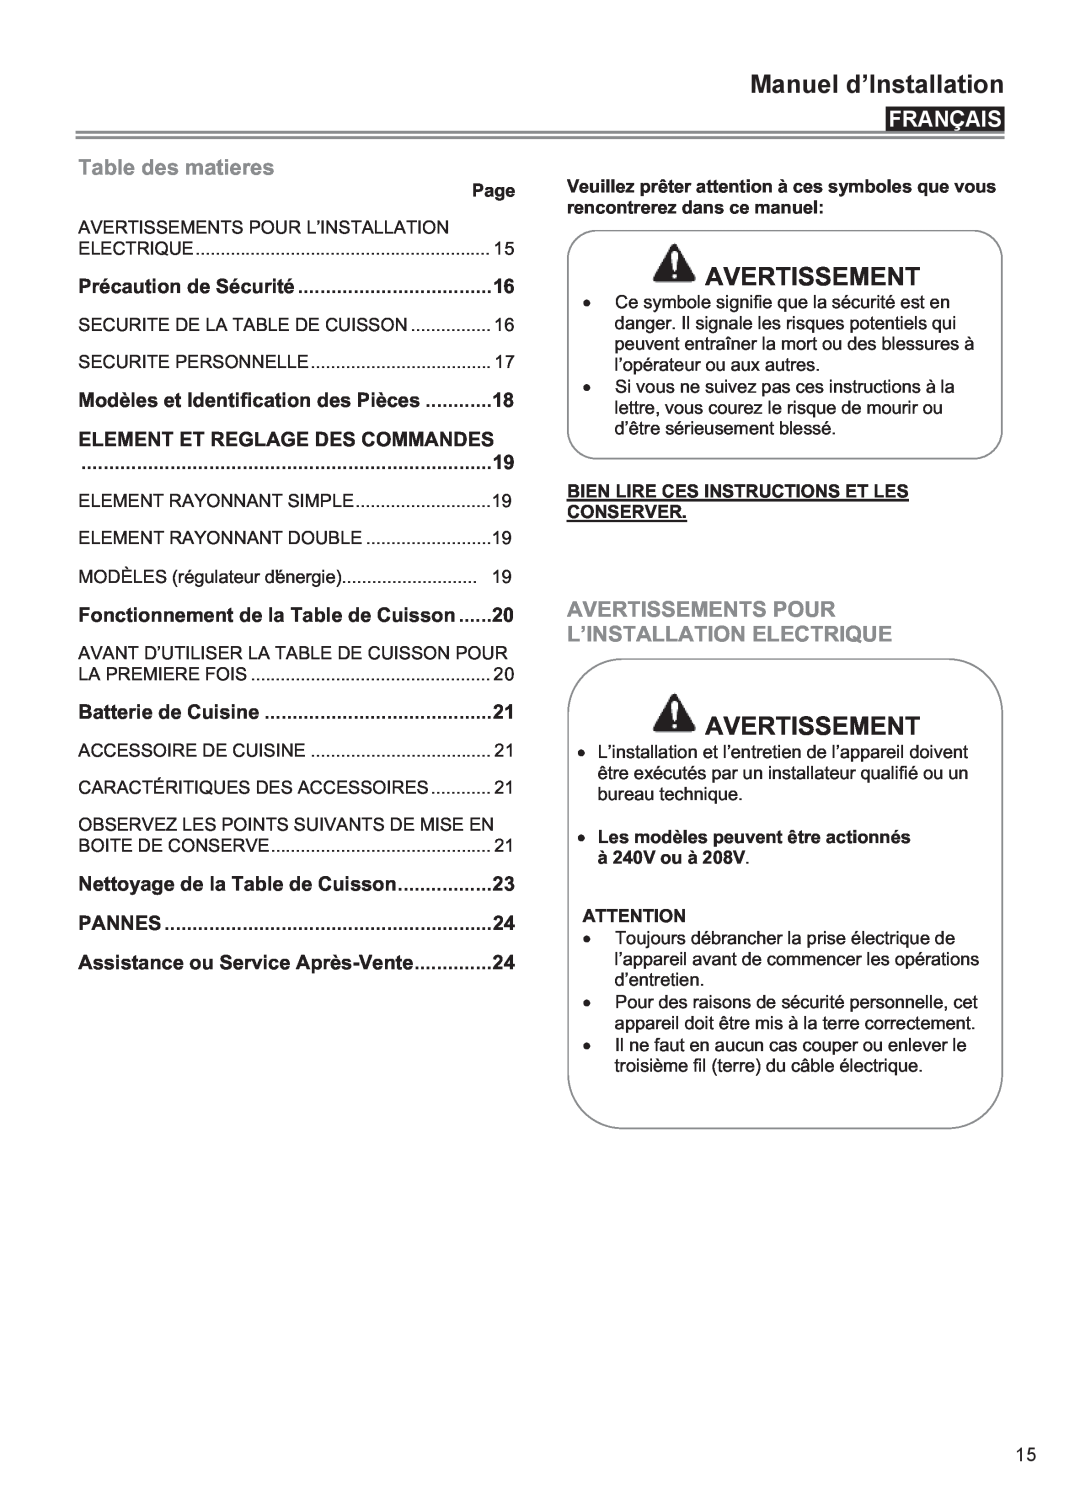 Bertazzoni P24 CER NE manual Français, Table des matieres, Avertissements Pour, L’Installation Electrique, Conserver 